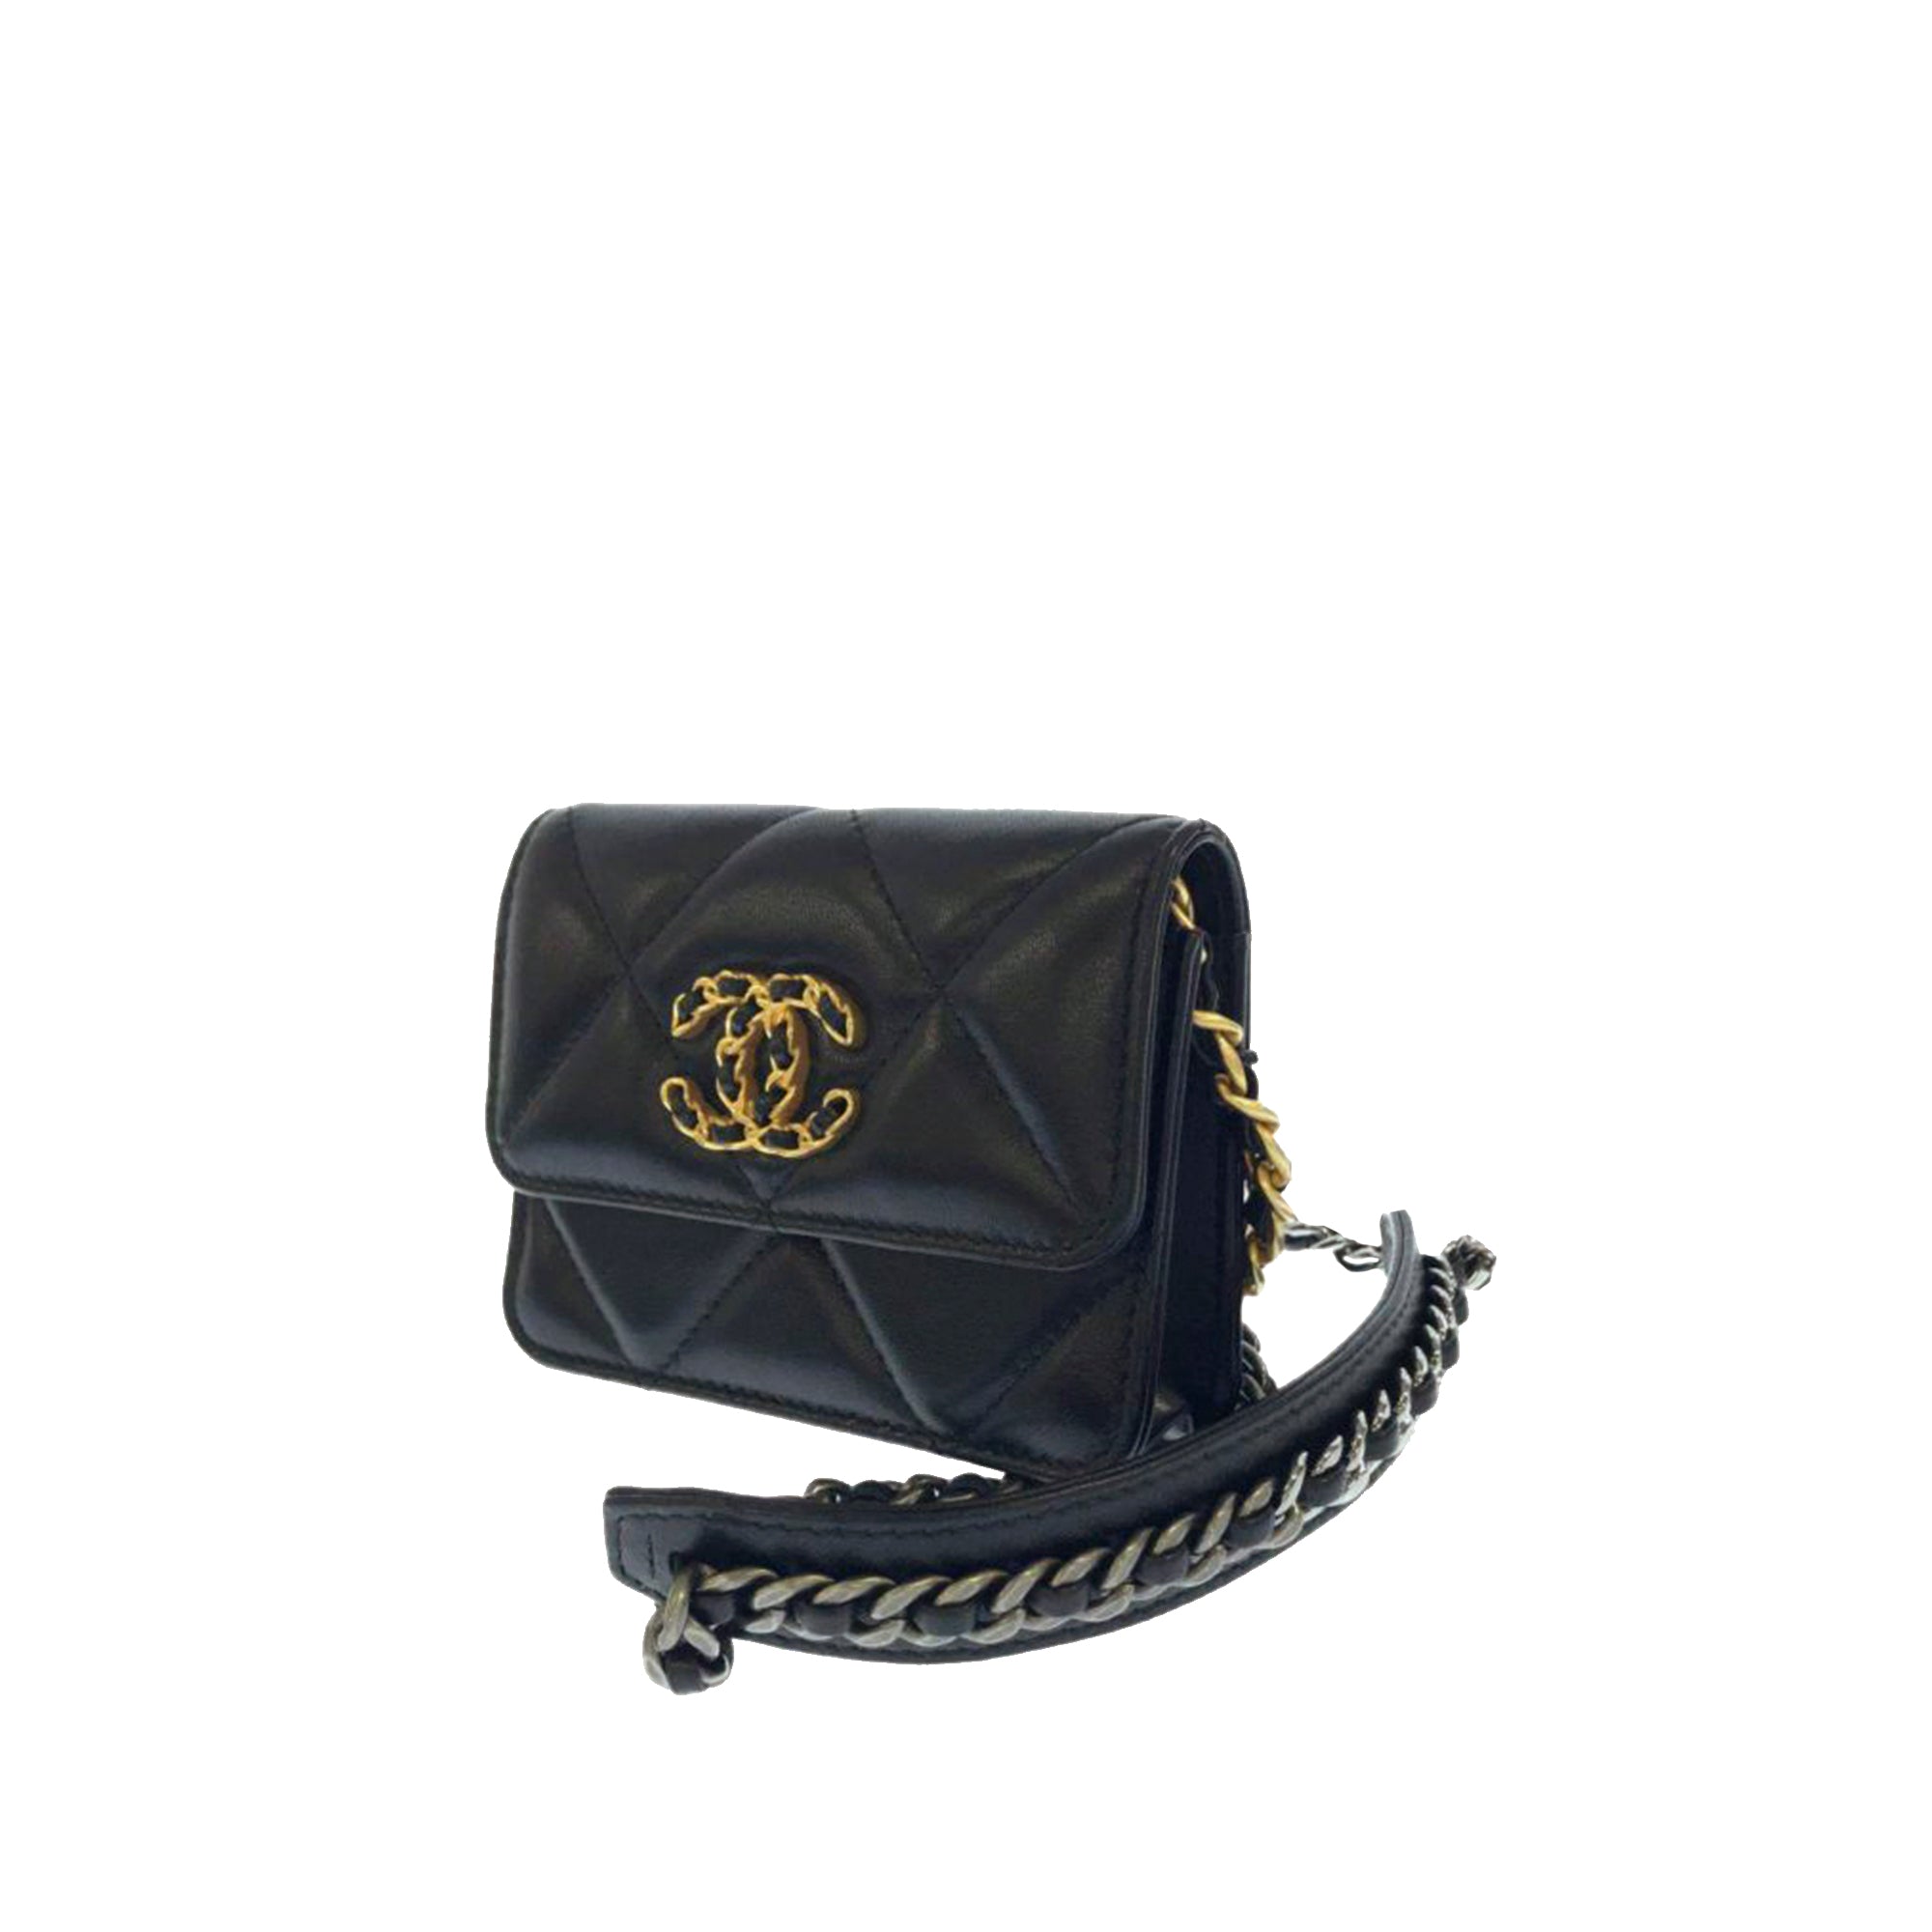 Chanel Black Leather Chanel 19 Flap Shoulder Bag Chanel